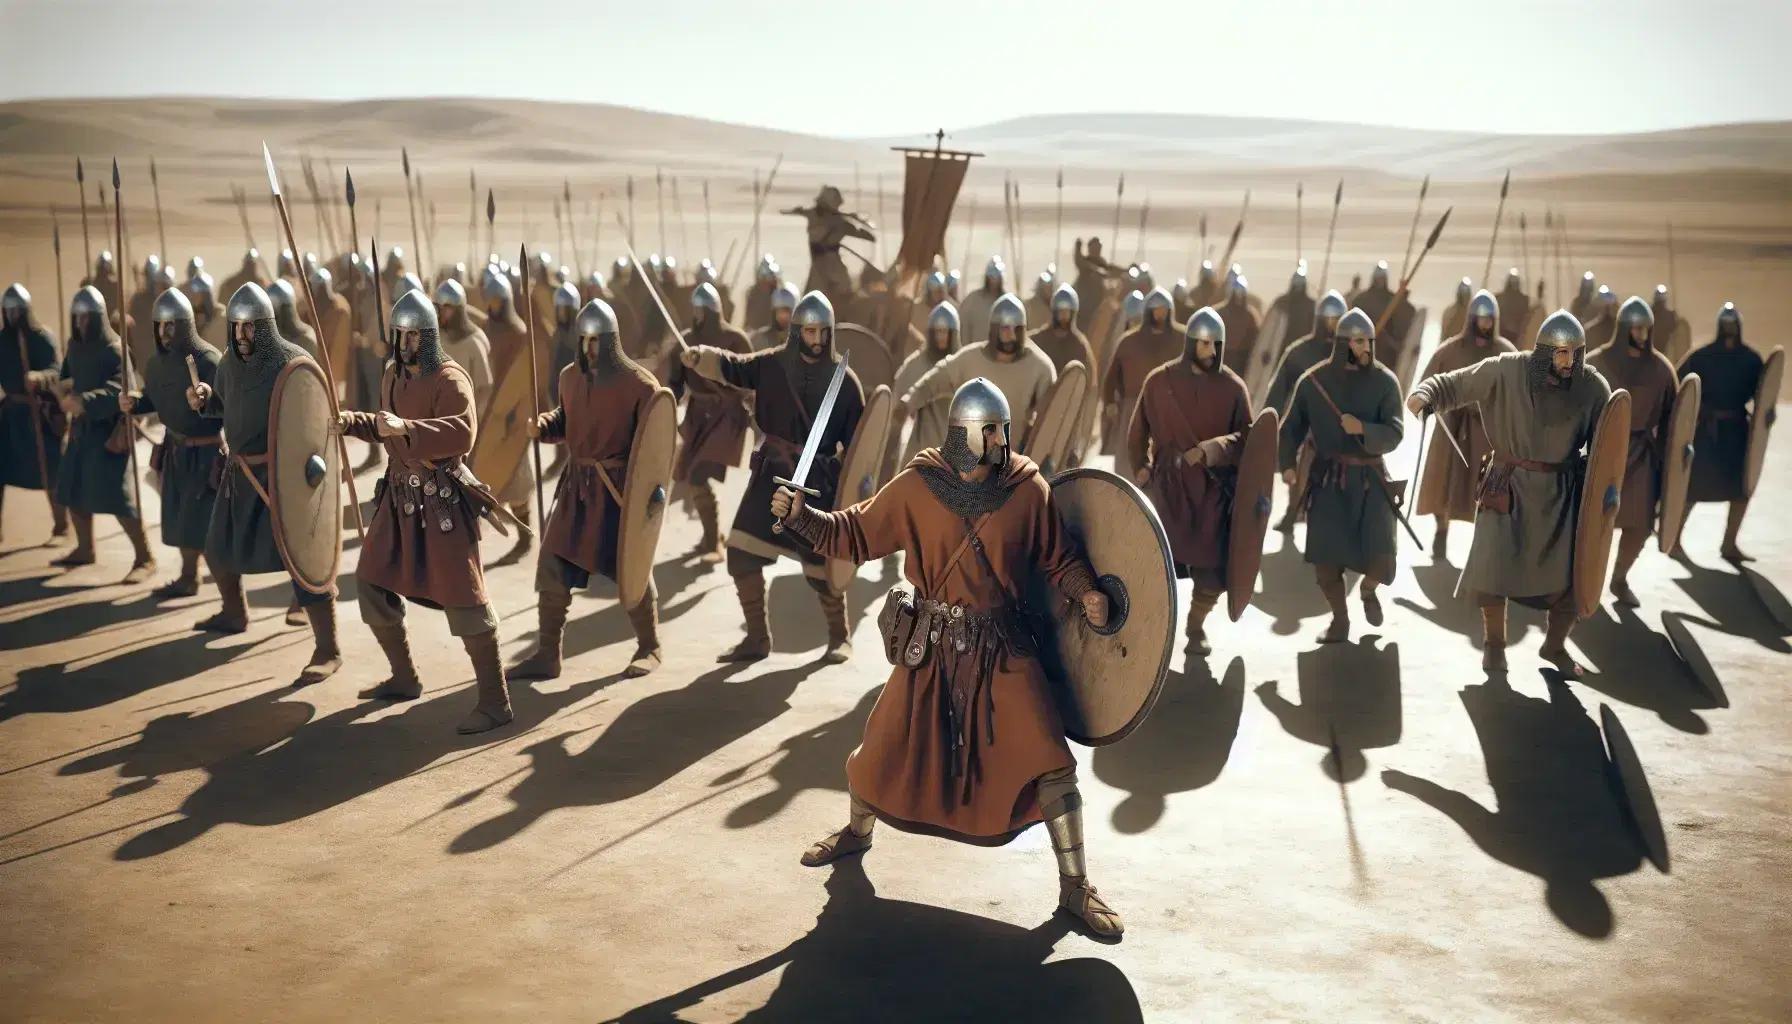 Grupo de guerreros en formación de batalla con túnicas en tonos tierra, armas de época y escudos redondos, liderados por un hombre con casco metálico bajo un cielo azul.